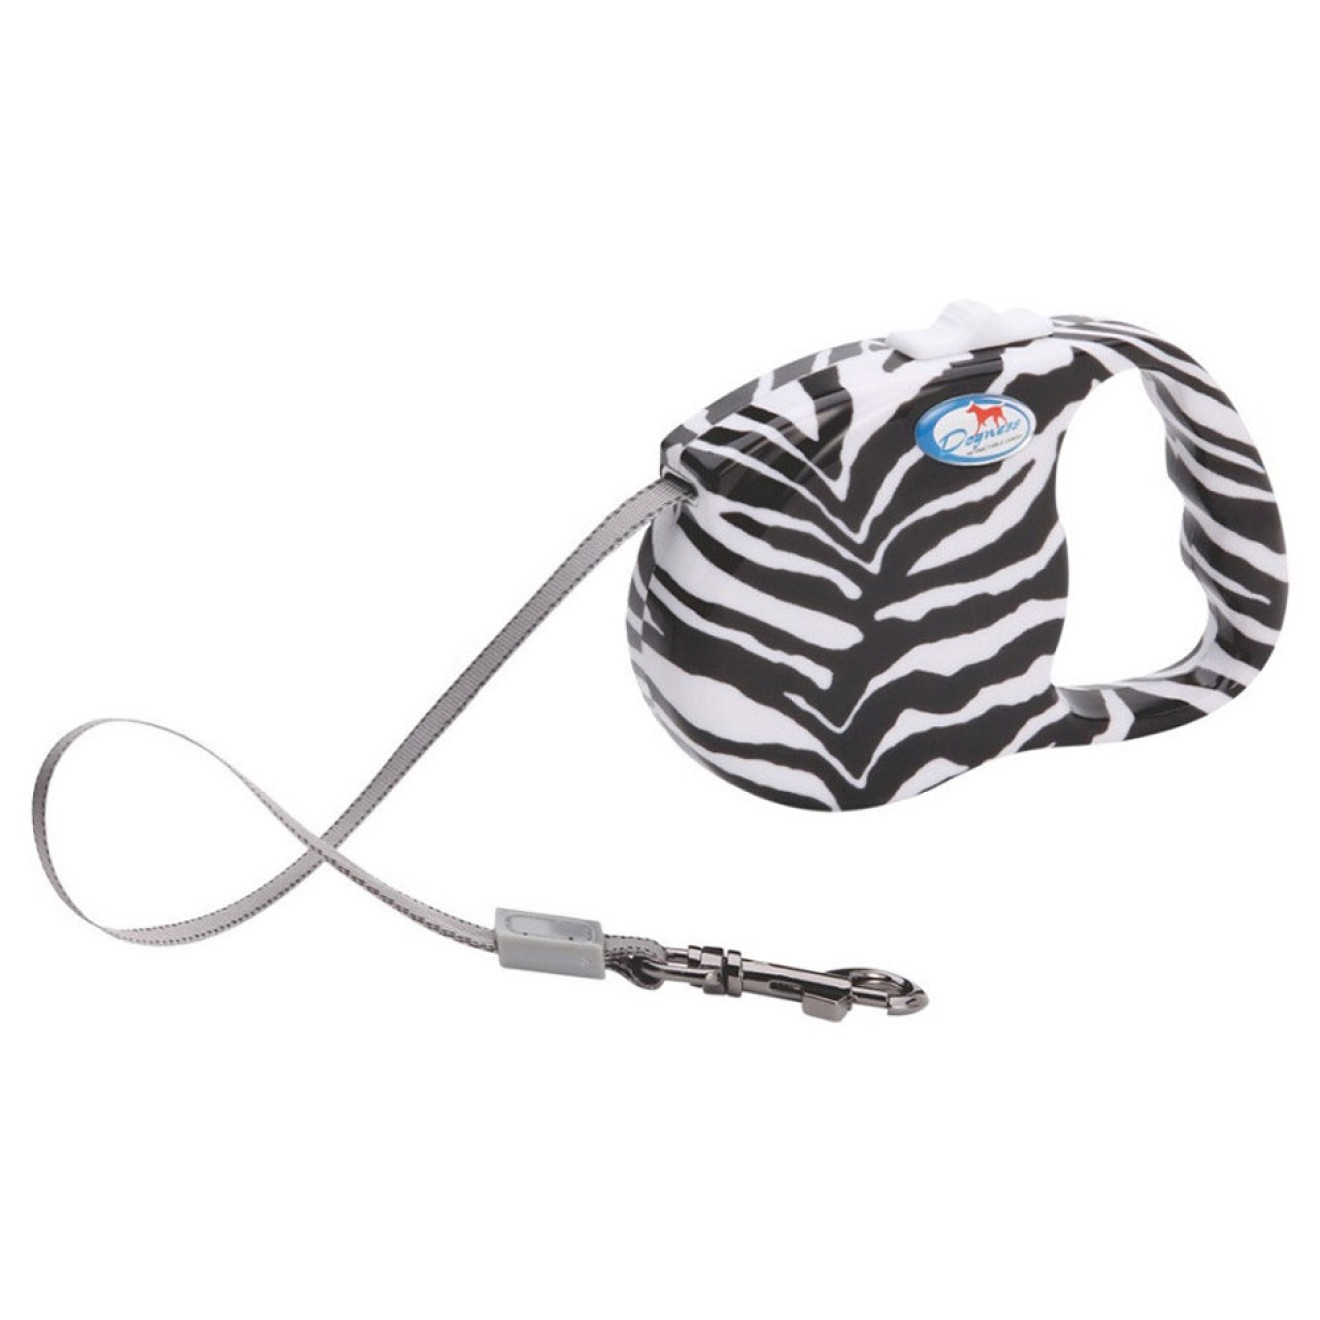 Rollleine im Zebra-Design 3 Meter Länge